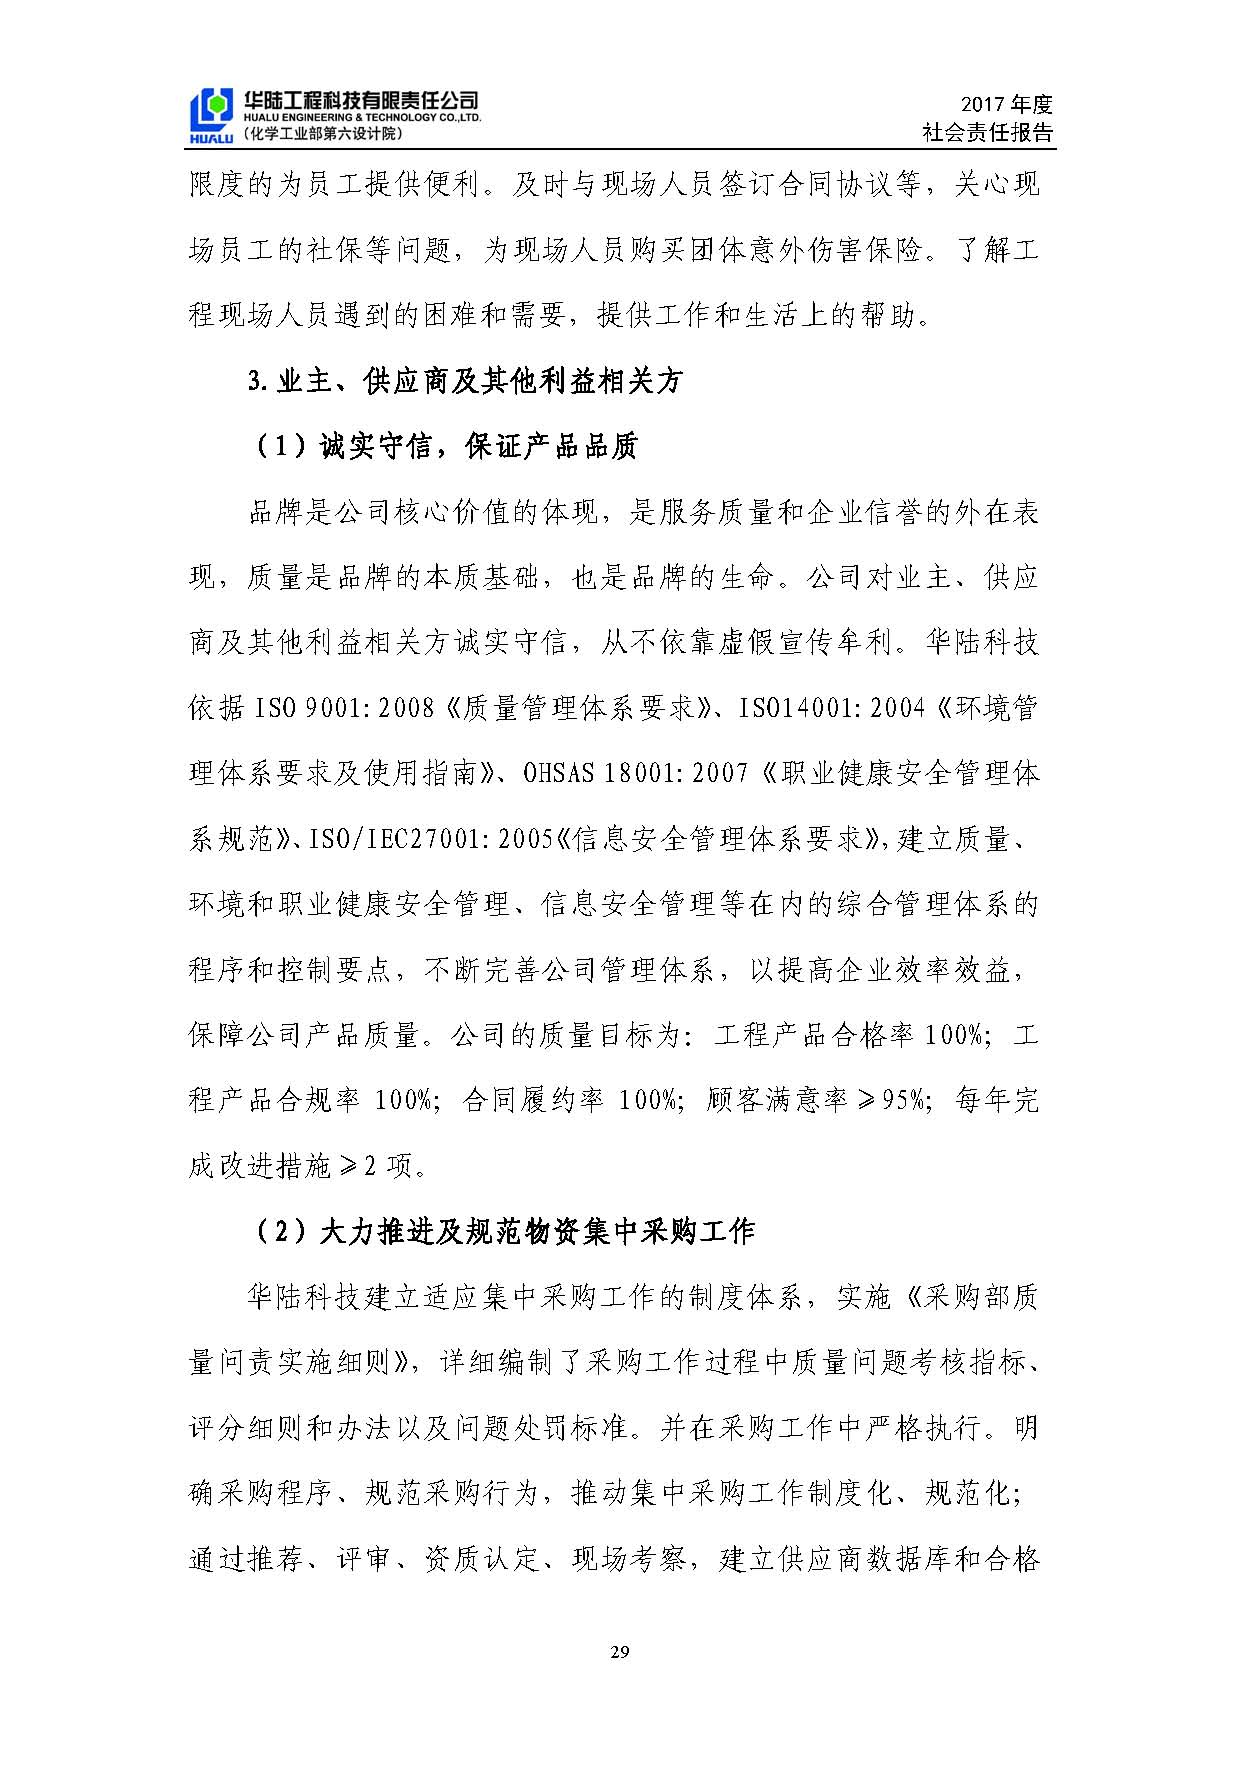 华陆工程科技有限责任公司2017年社会责任报告_页面_30.jpg